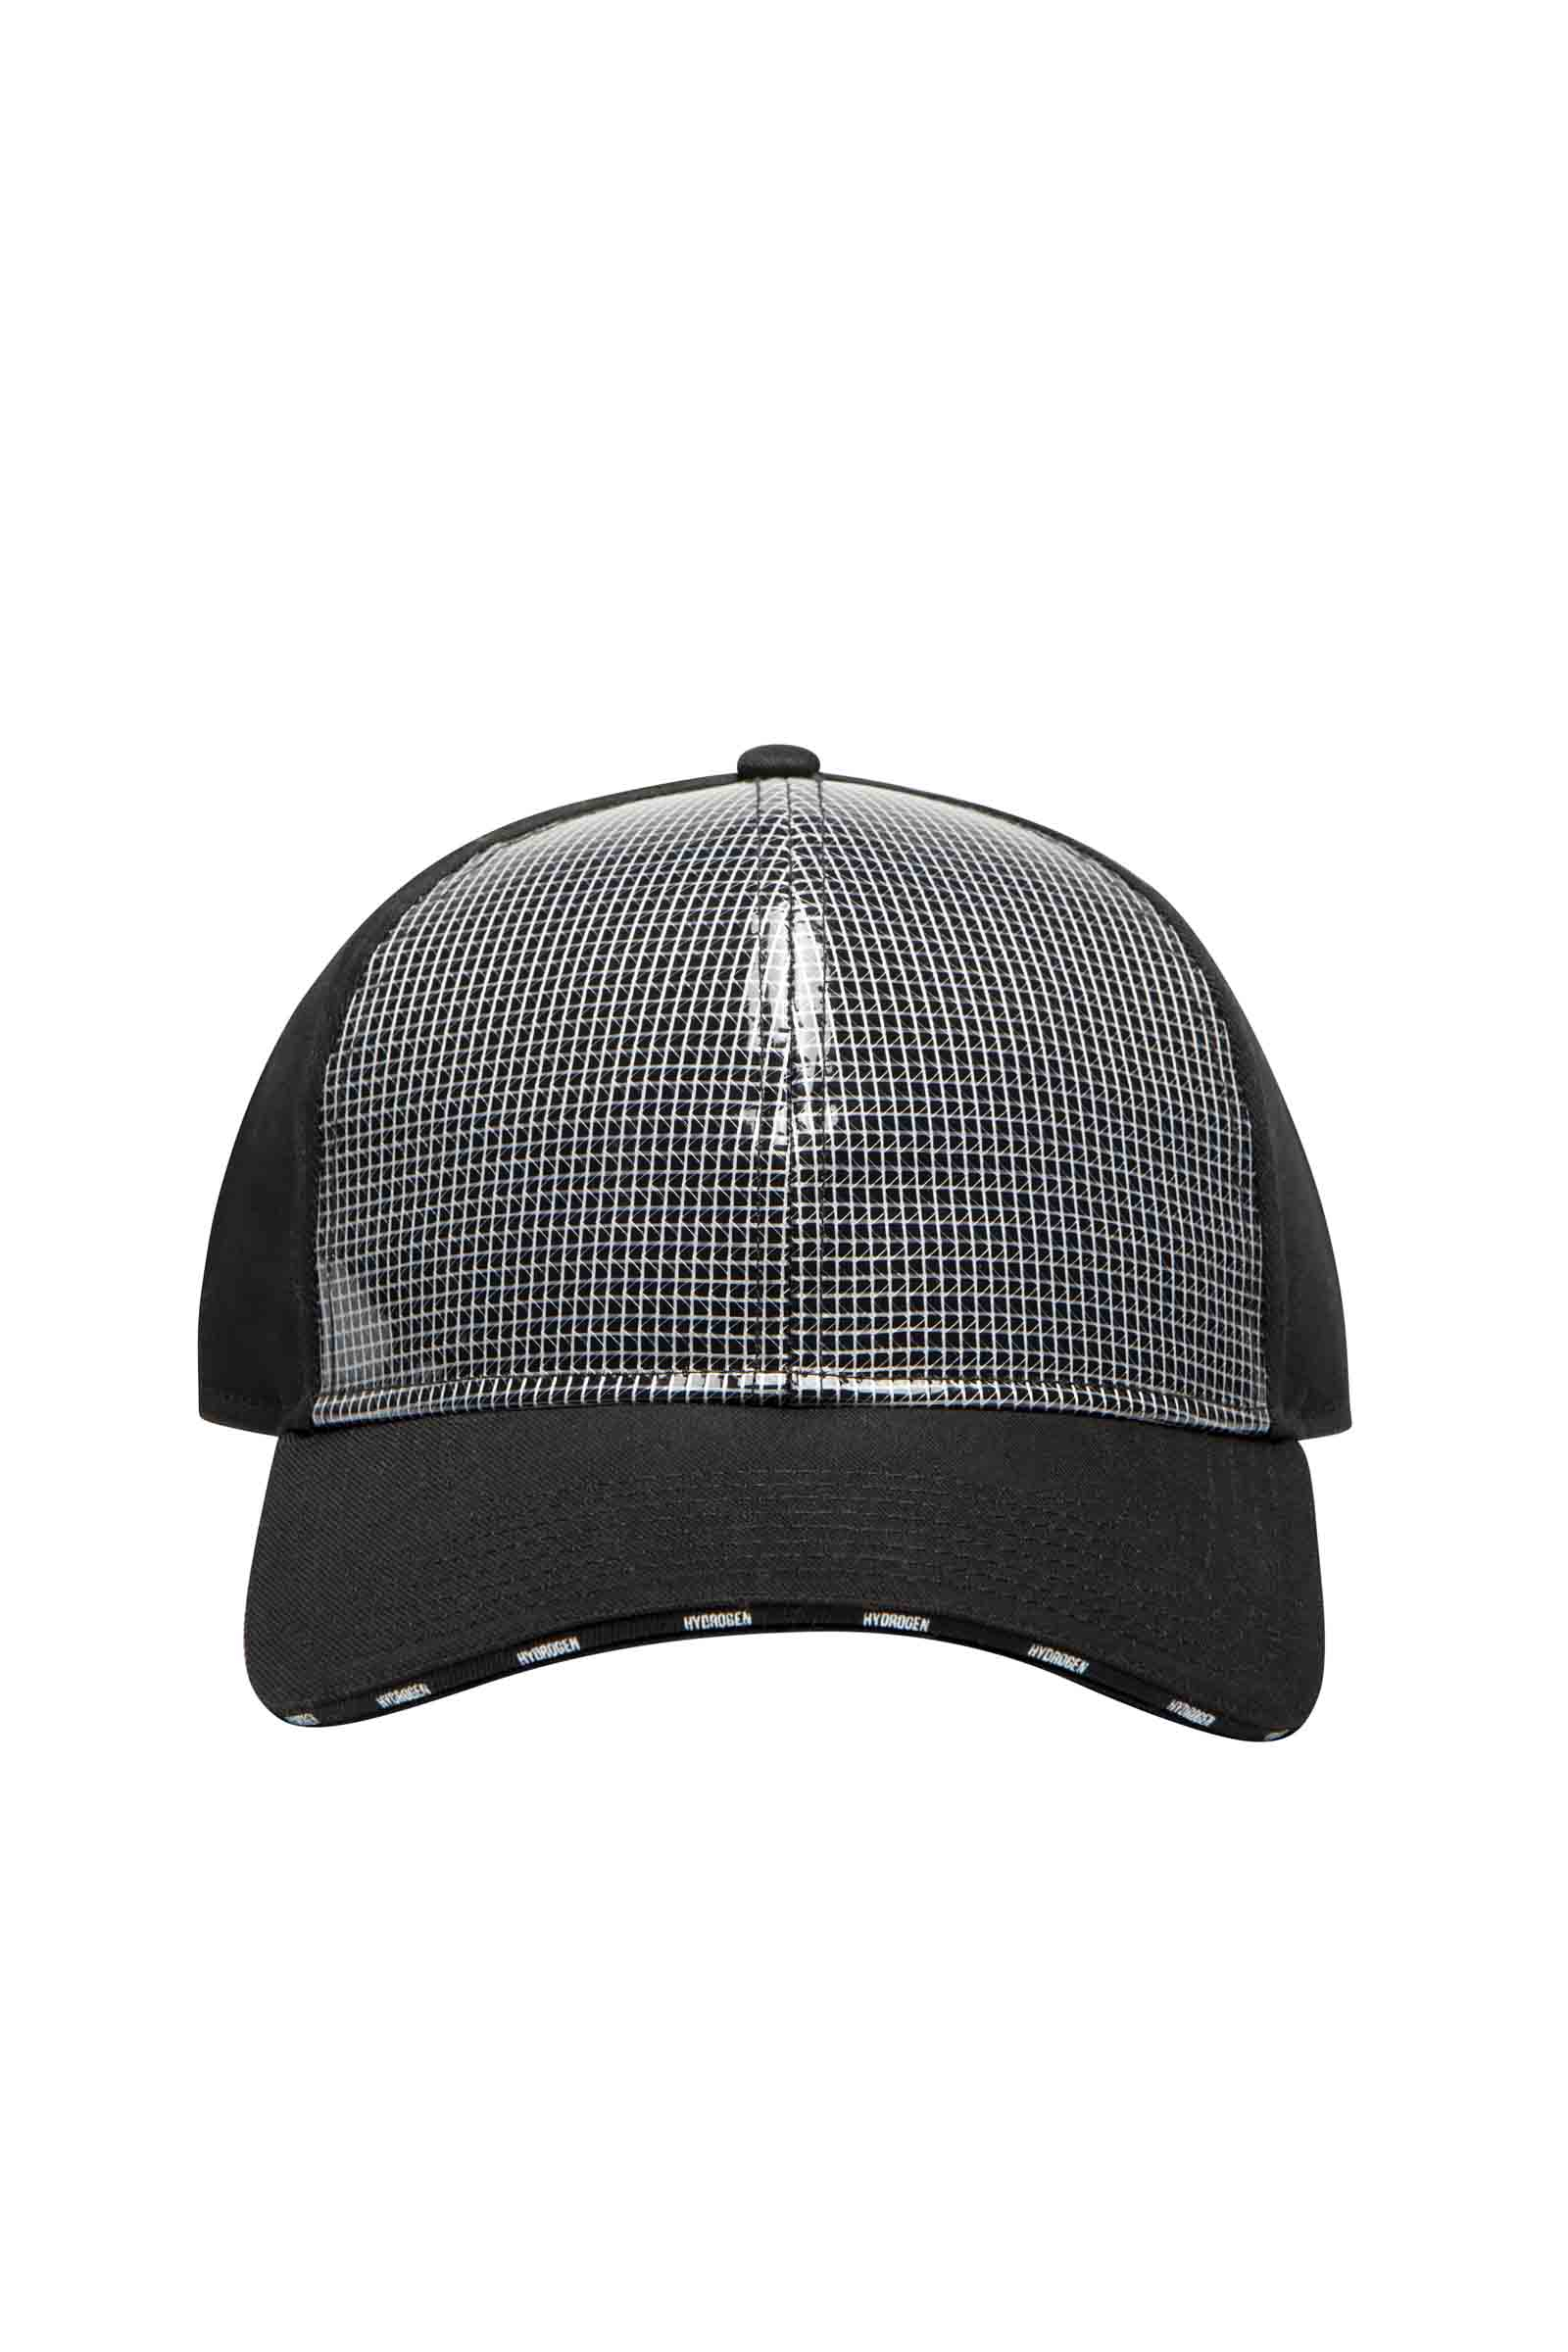 CAP - BLACK,SILVER - Hydrogen - Luxury Sportwear